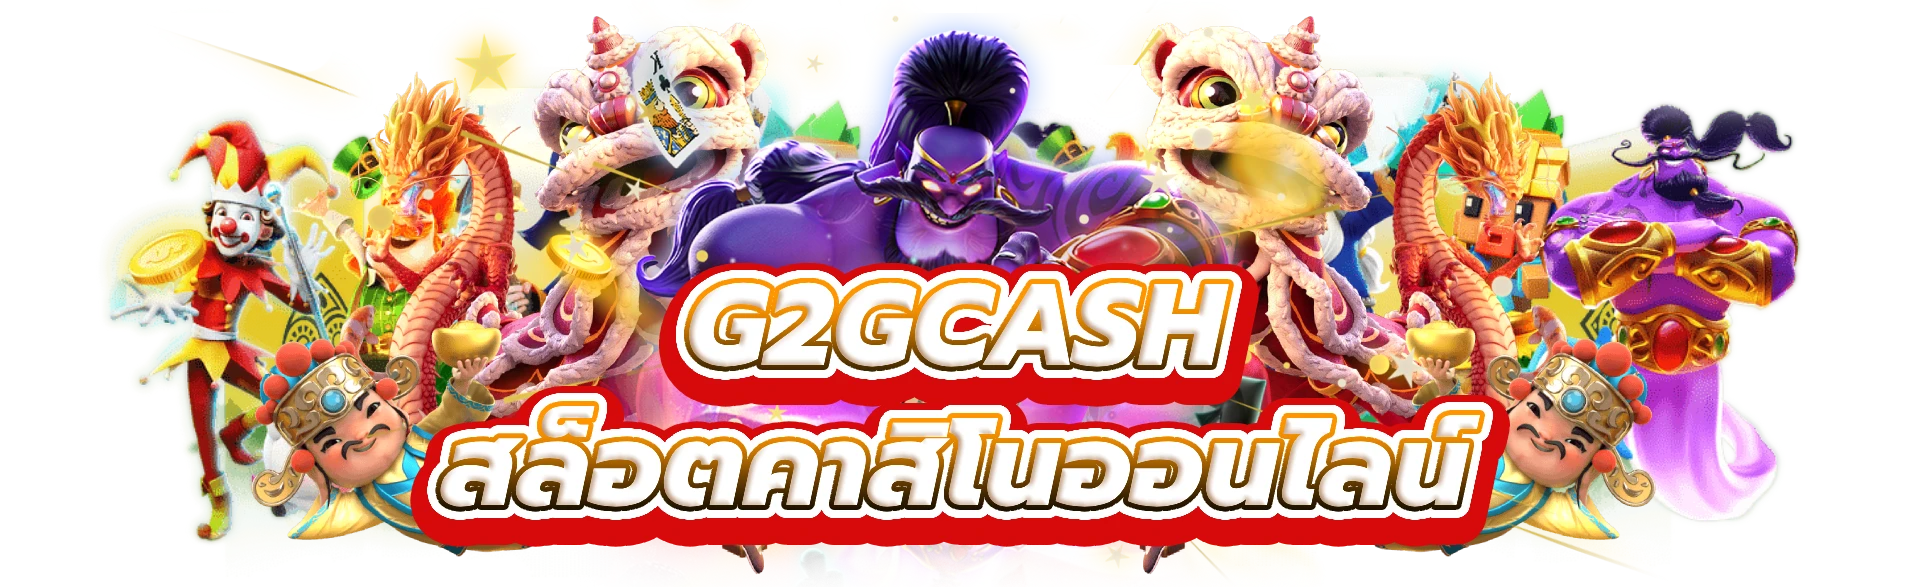 g2gcash เล่นและรับรางวัลใหญ่ที่สล็อตคาสิโนออนไลน์